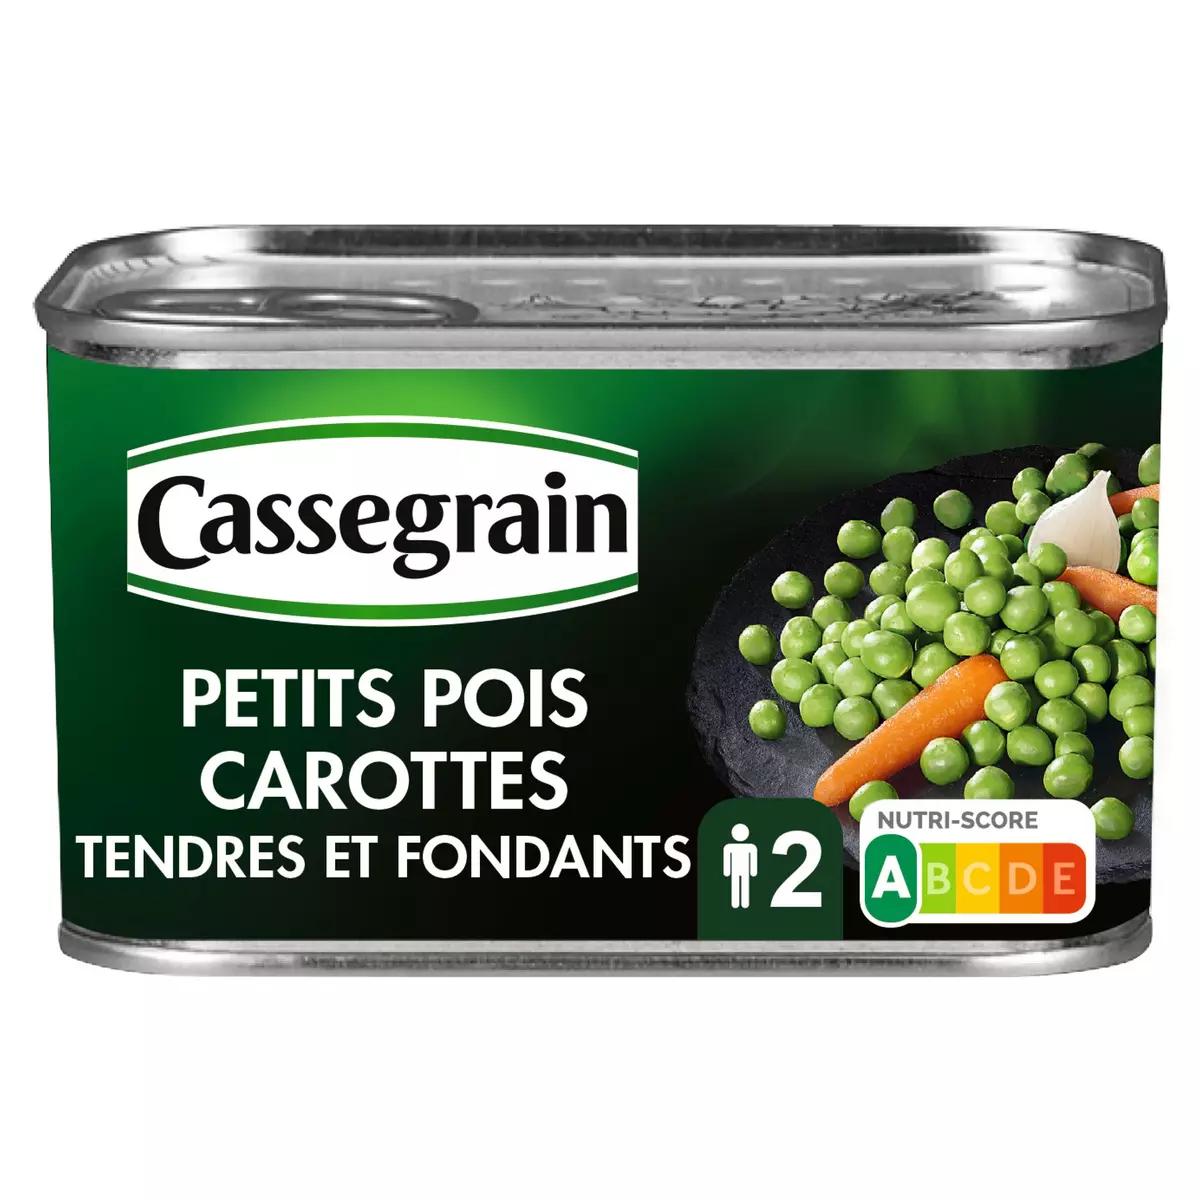 CASSEGRAIN Petits pois carottes tendres et fondants 265g